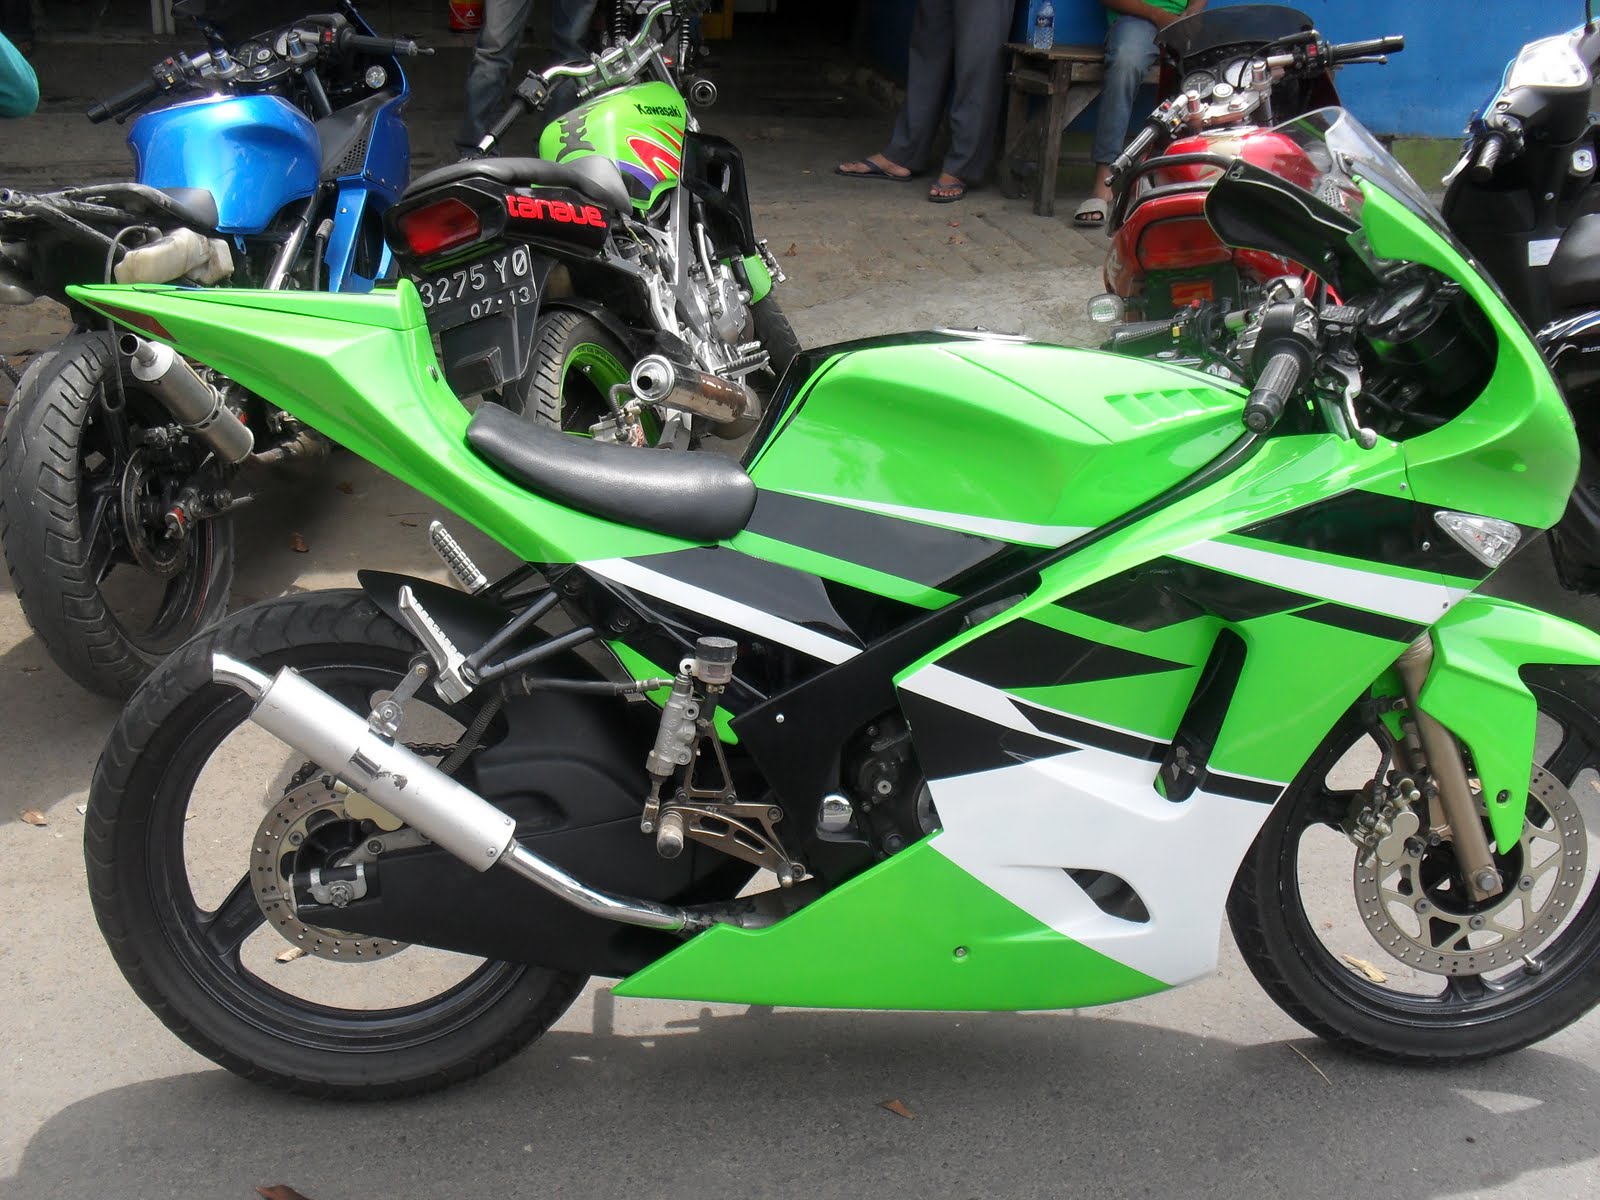 Image of Modif Ninja 250 Rr